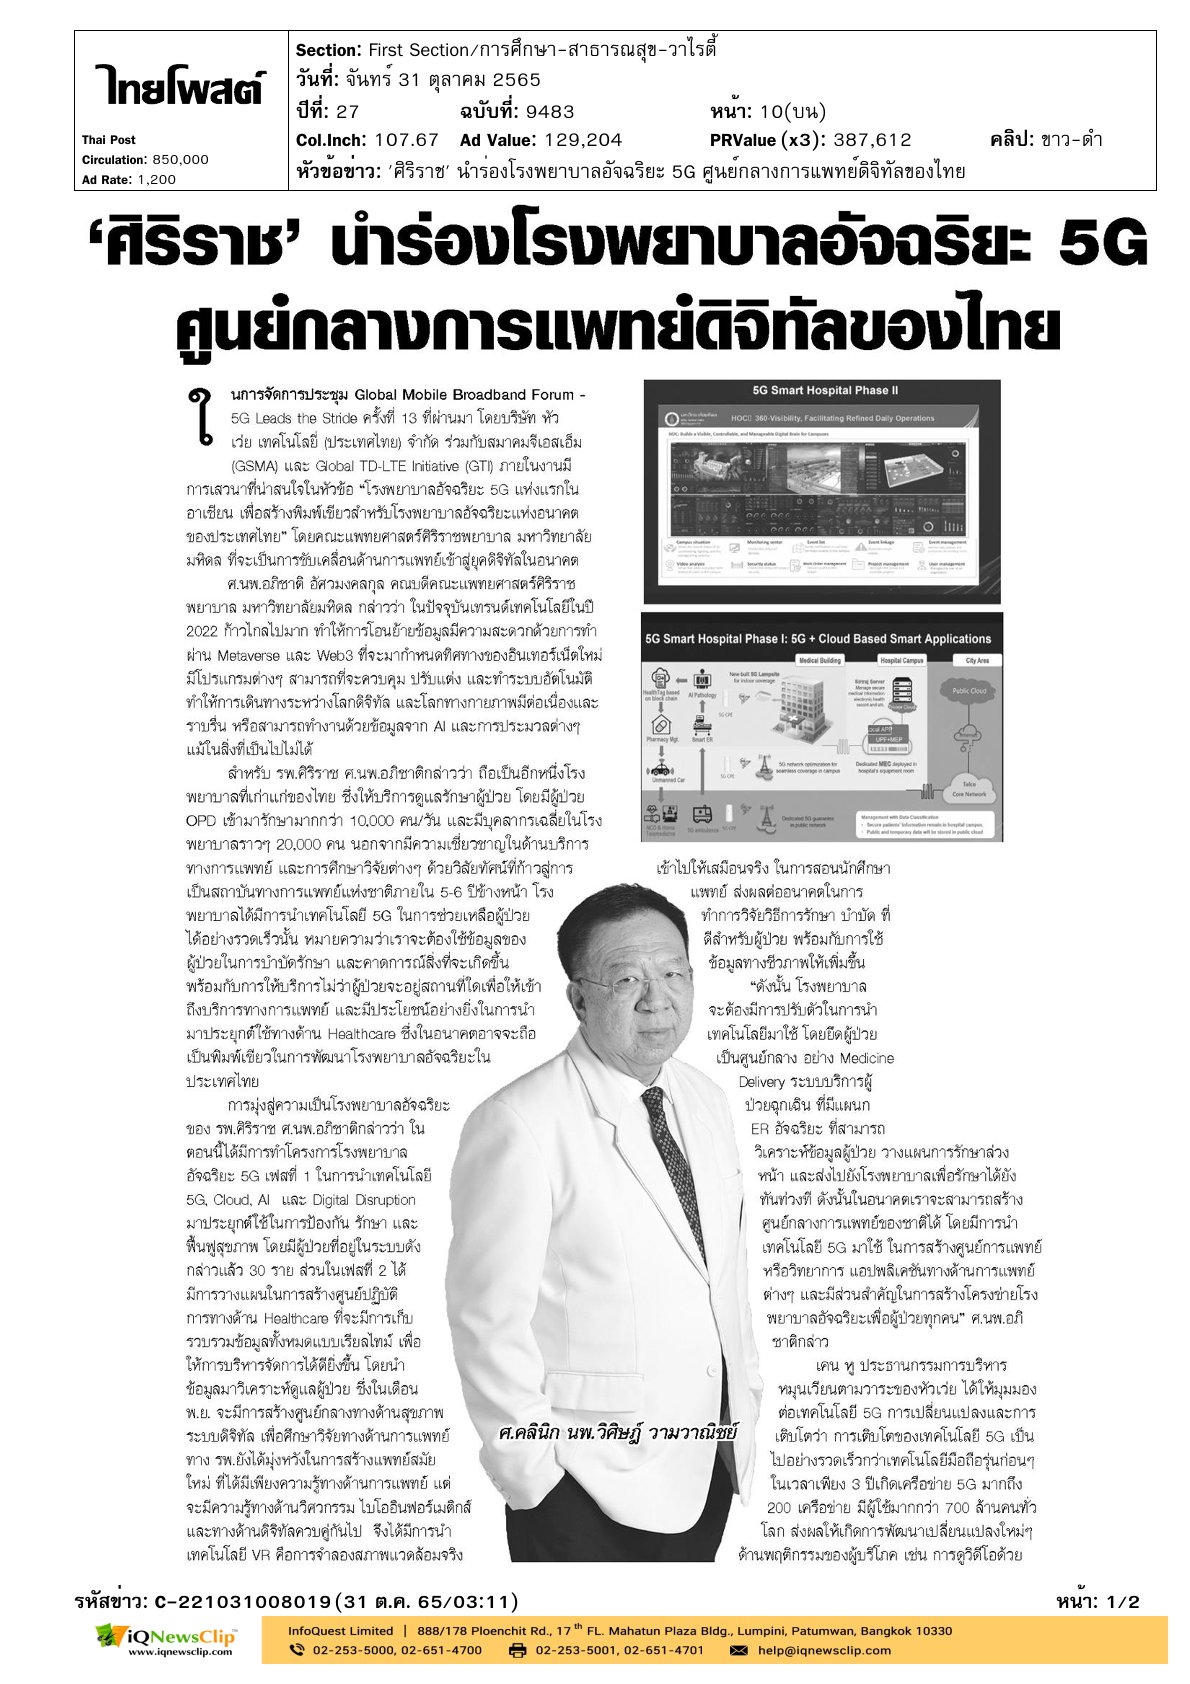 บทความเรื่อง “ศิริราช นำร่องโรงพยาบาลอัจฉริยะ 5G ศูนย์กลางการแพทย์ดิจิทัลของไทย”